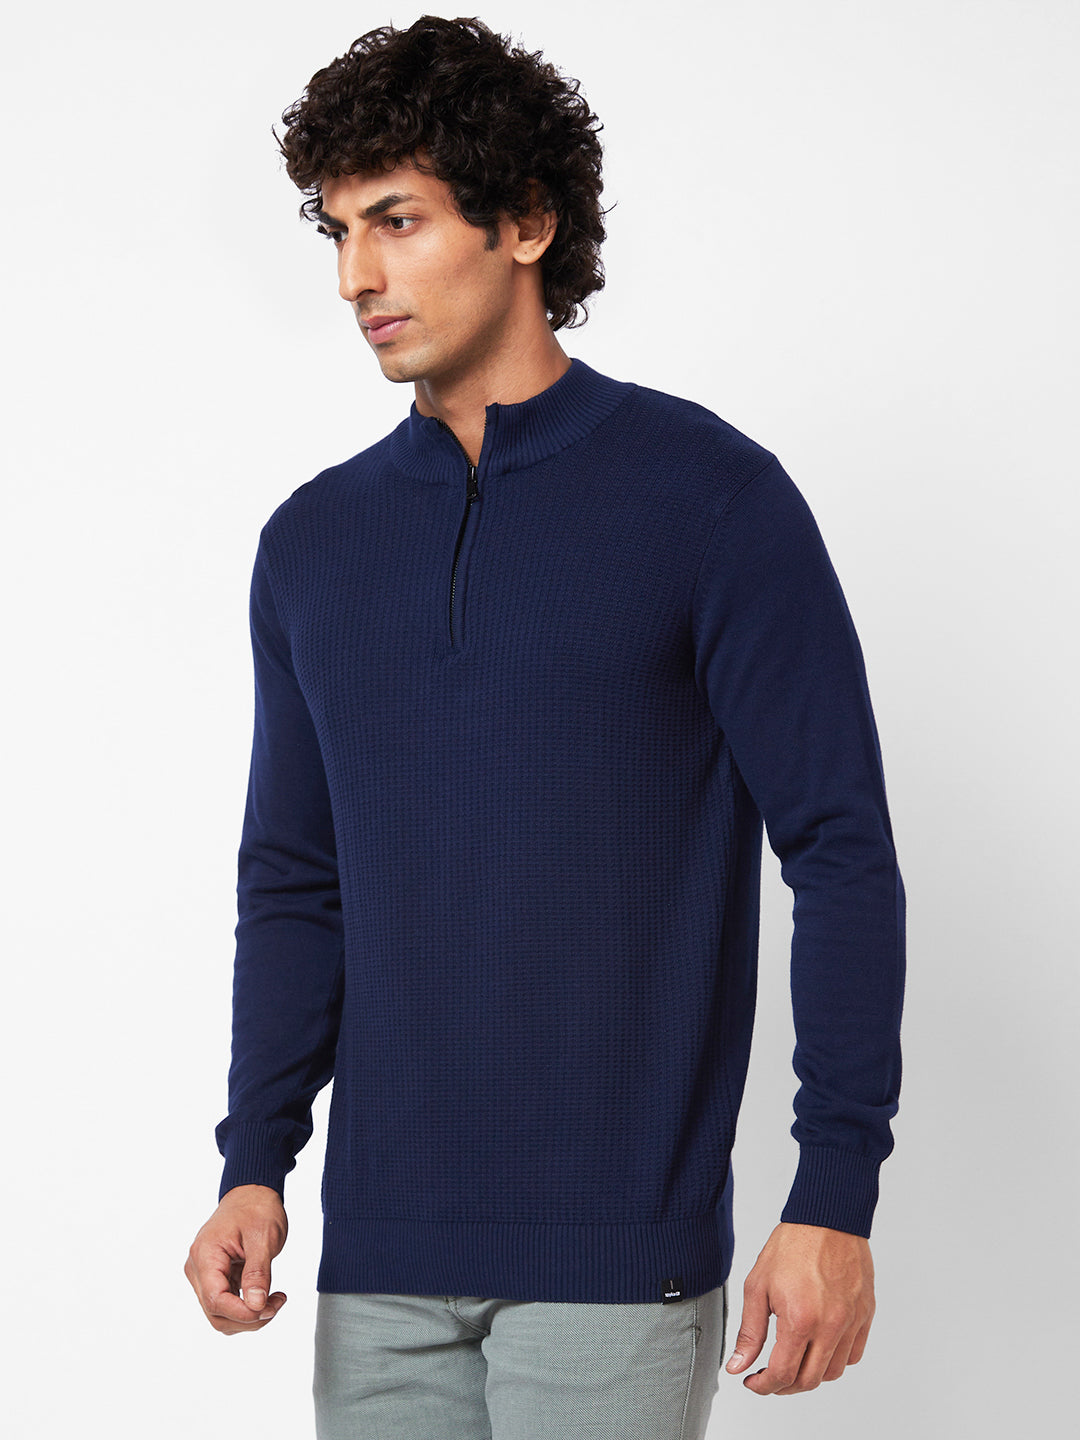 Spykar Polo Collar Full Sleeves Blue Sweater For Men